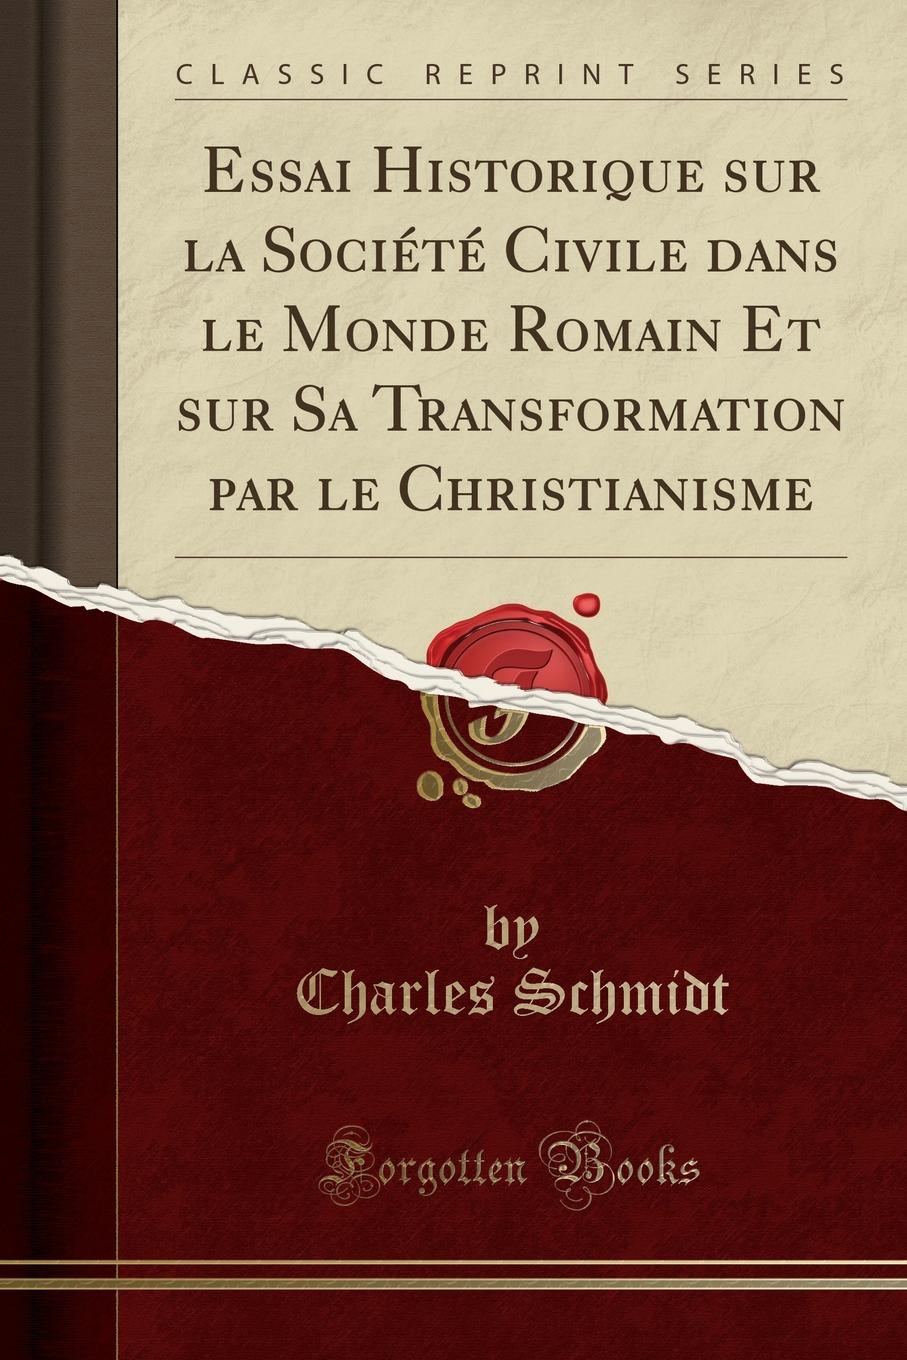 Essai Historique sur la Societe Civile dans le Monde Romain Et sur Sa Transformation par le Christianisme (Classic Reprint)